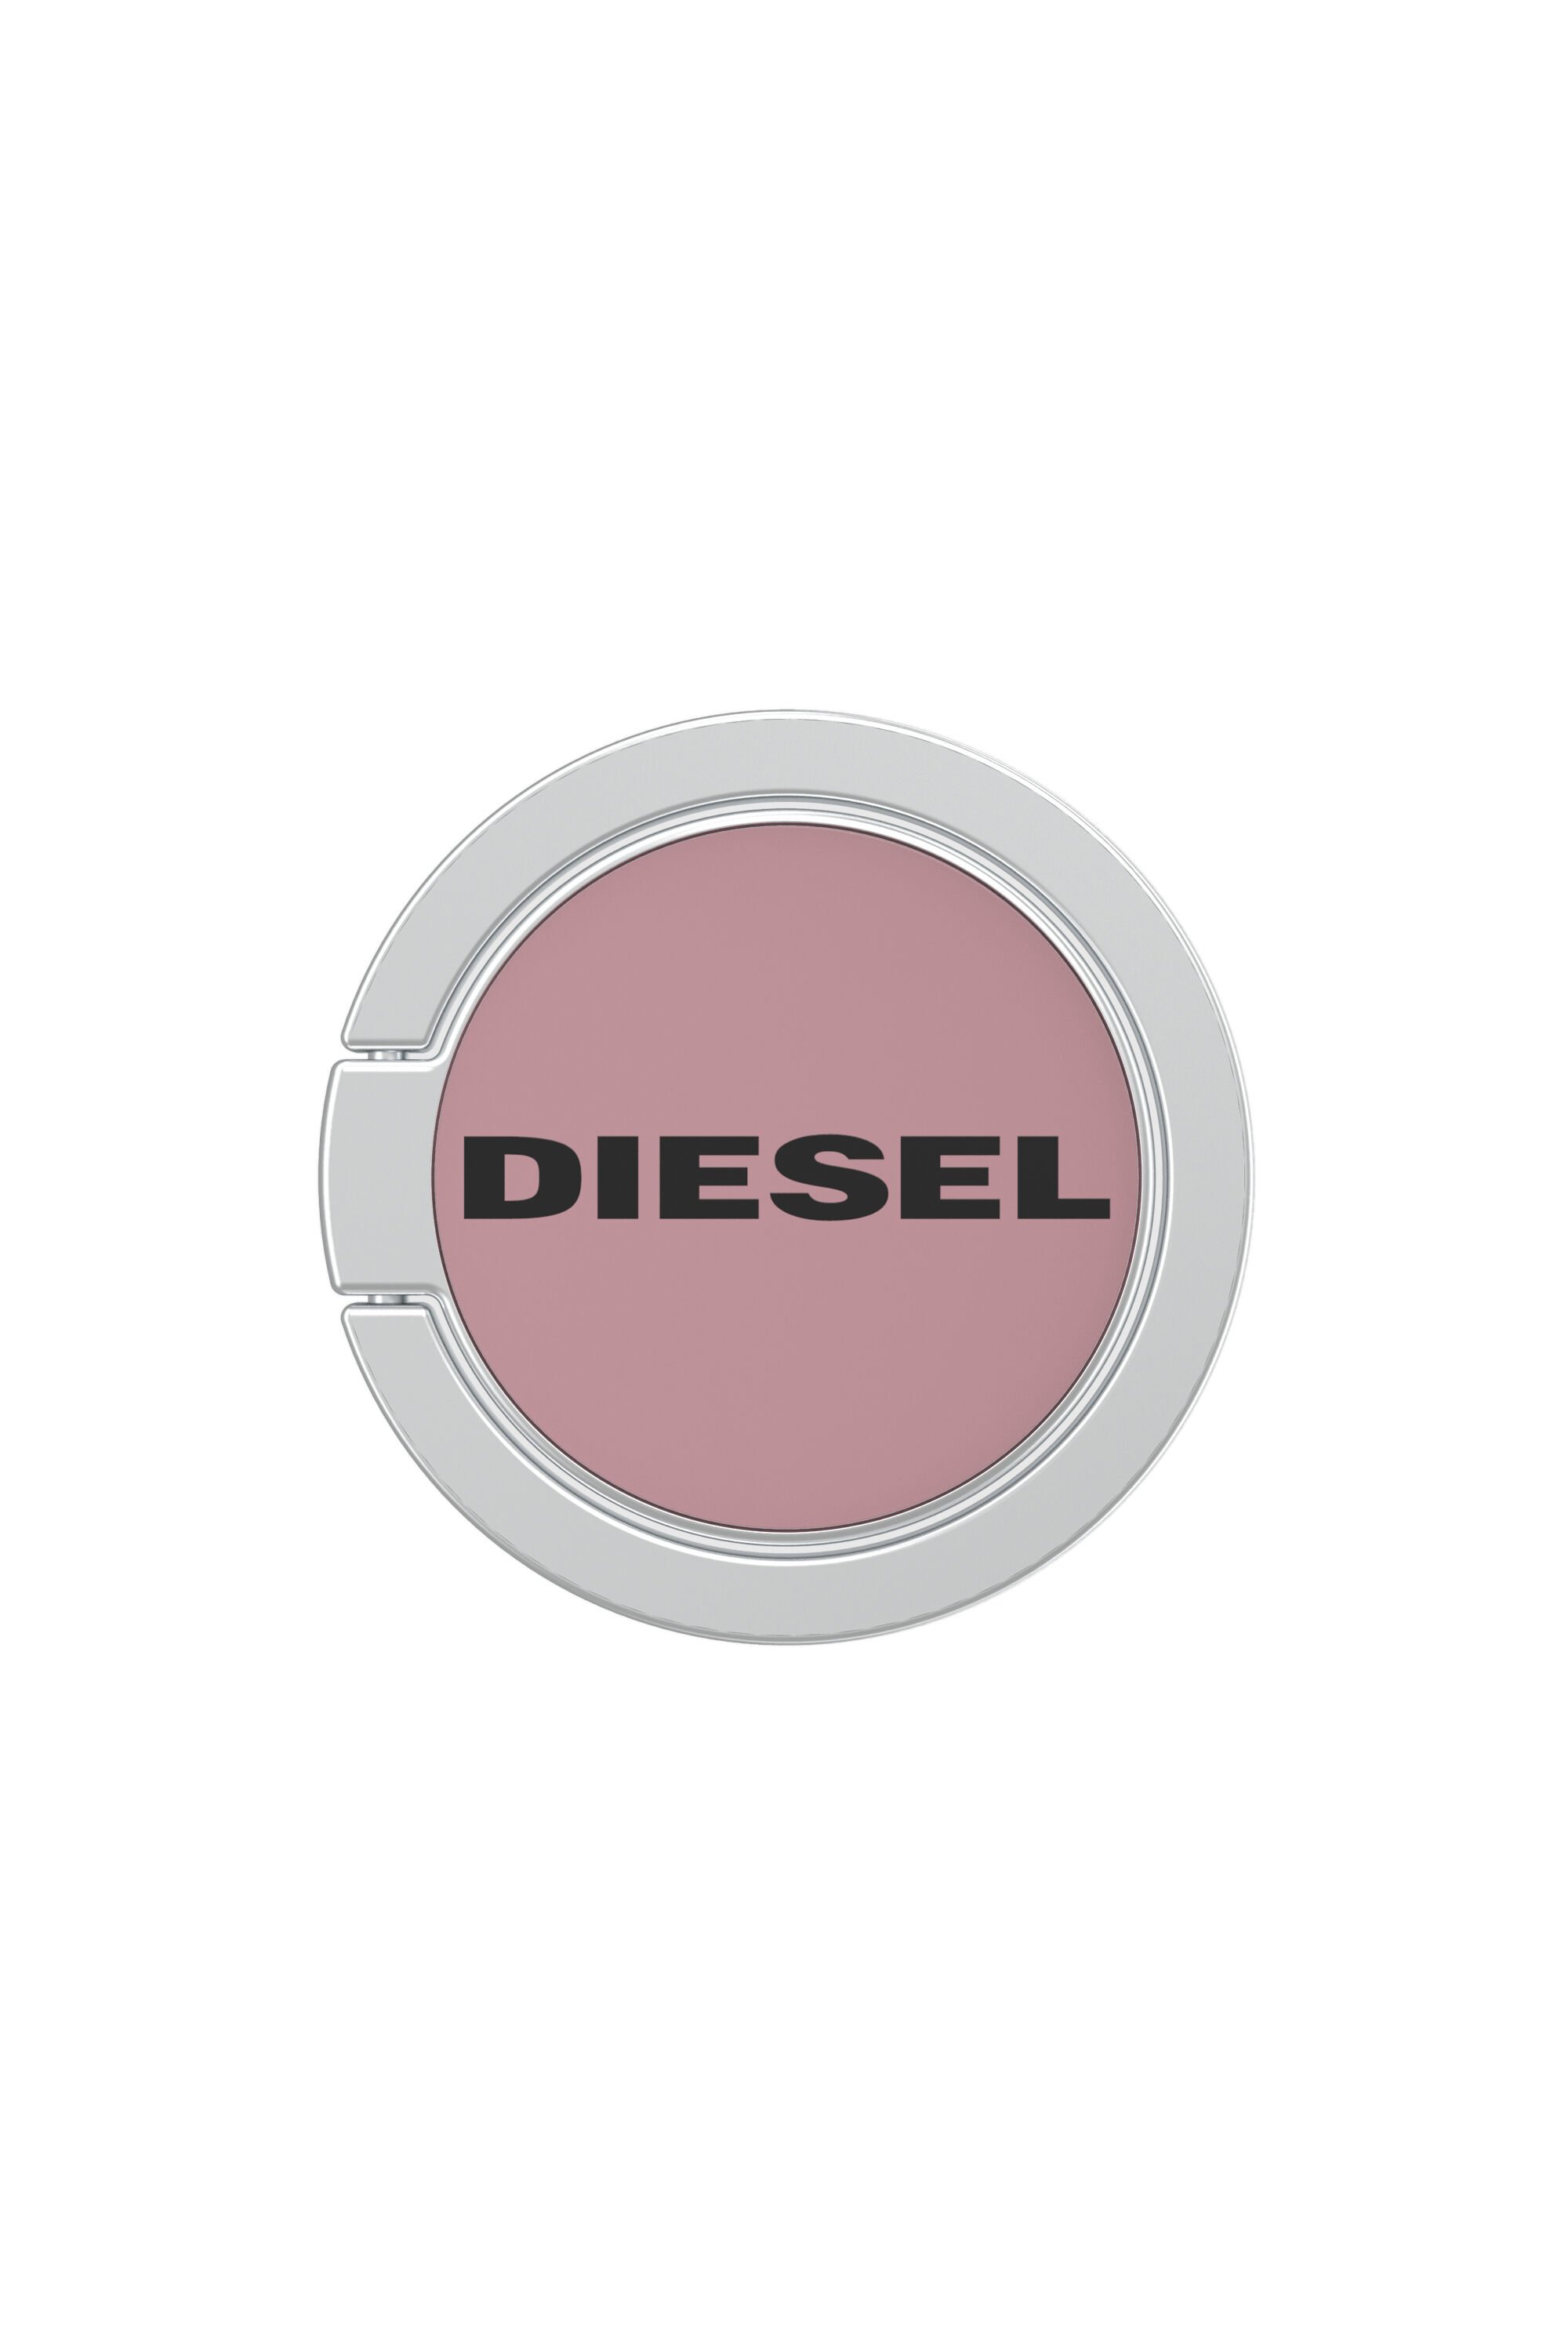 Diesel - 41922, ピンク / ホワイト - Image 1